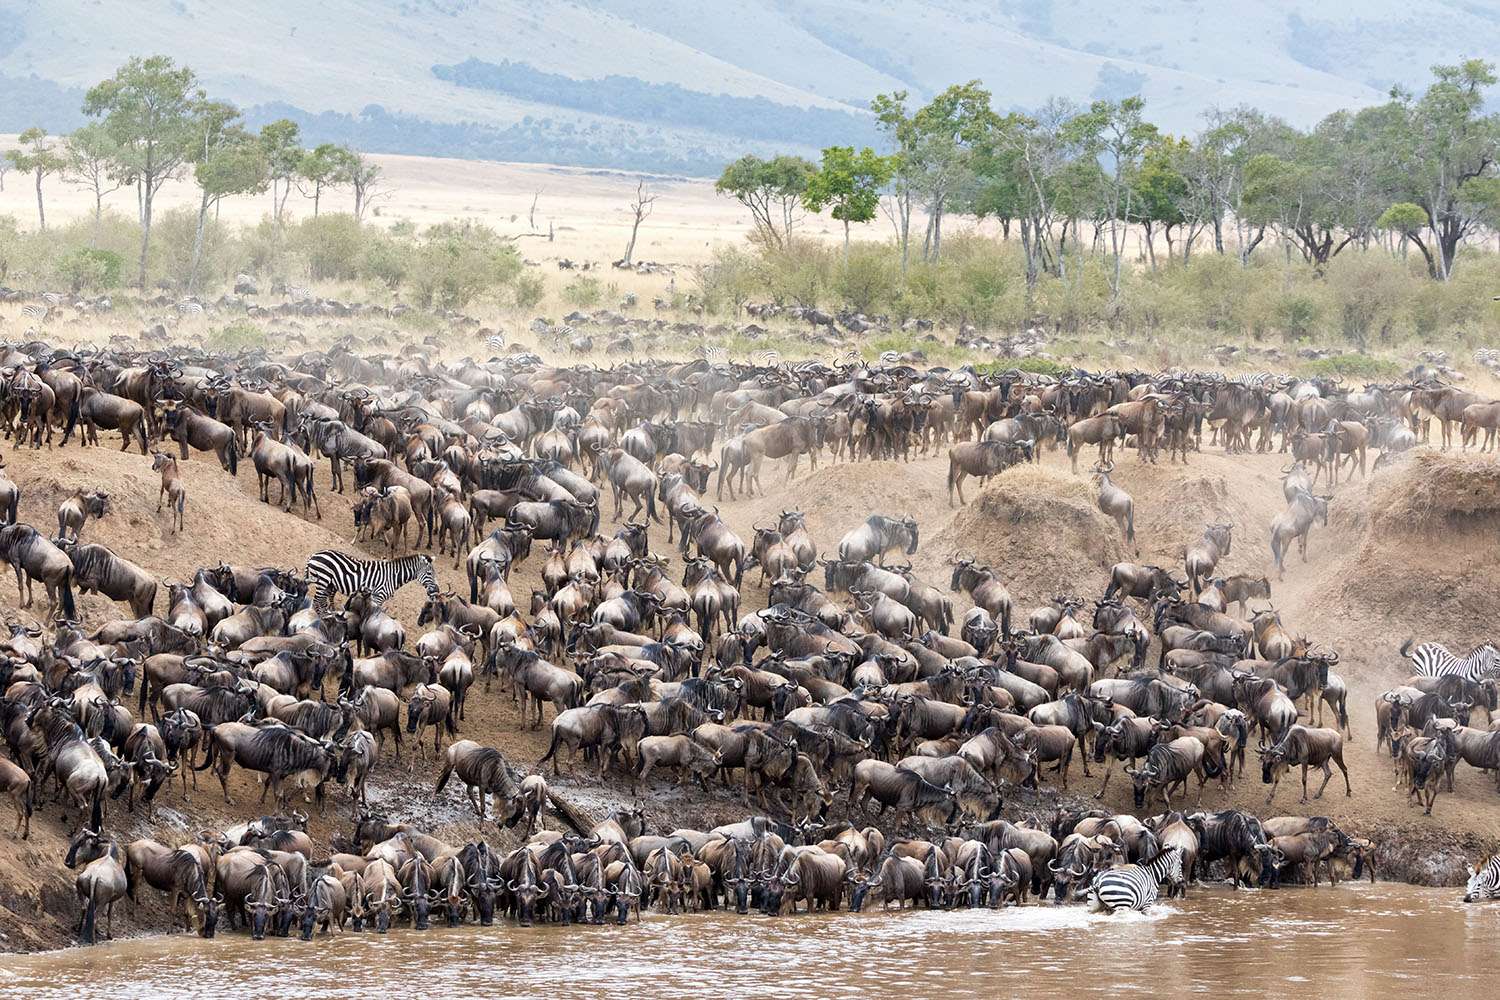 Wildebeests river crossing